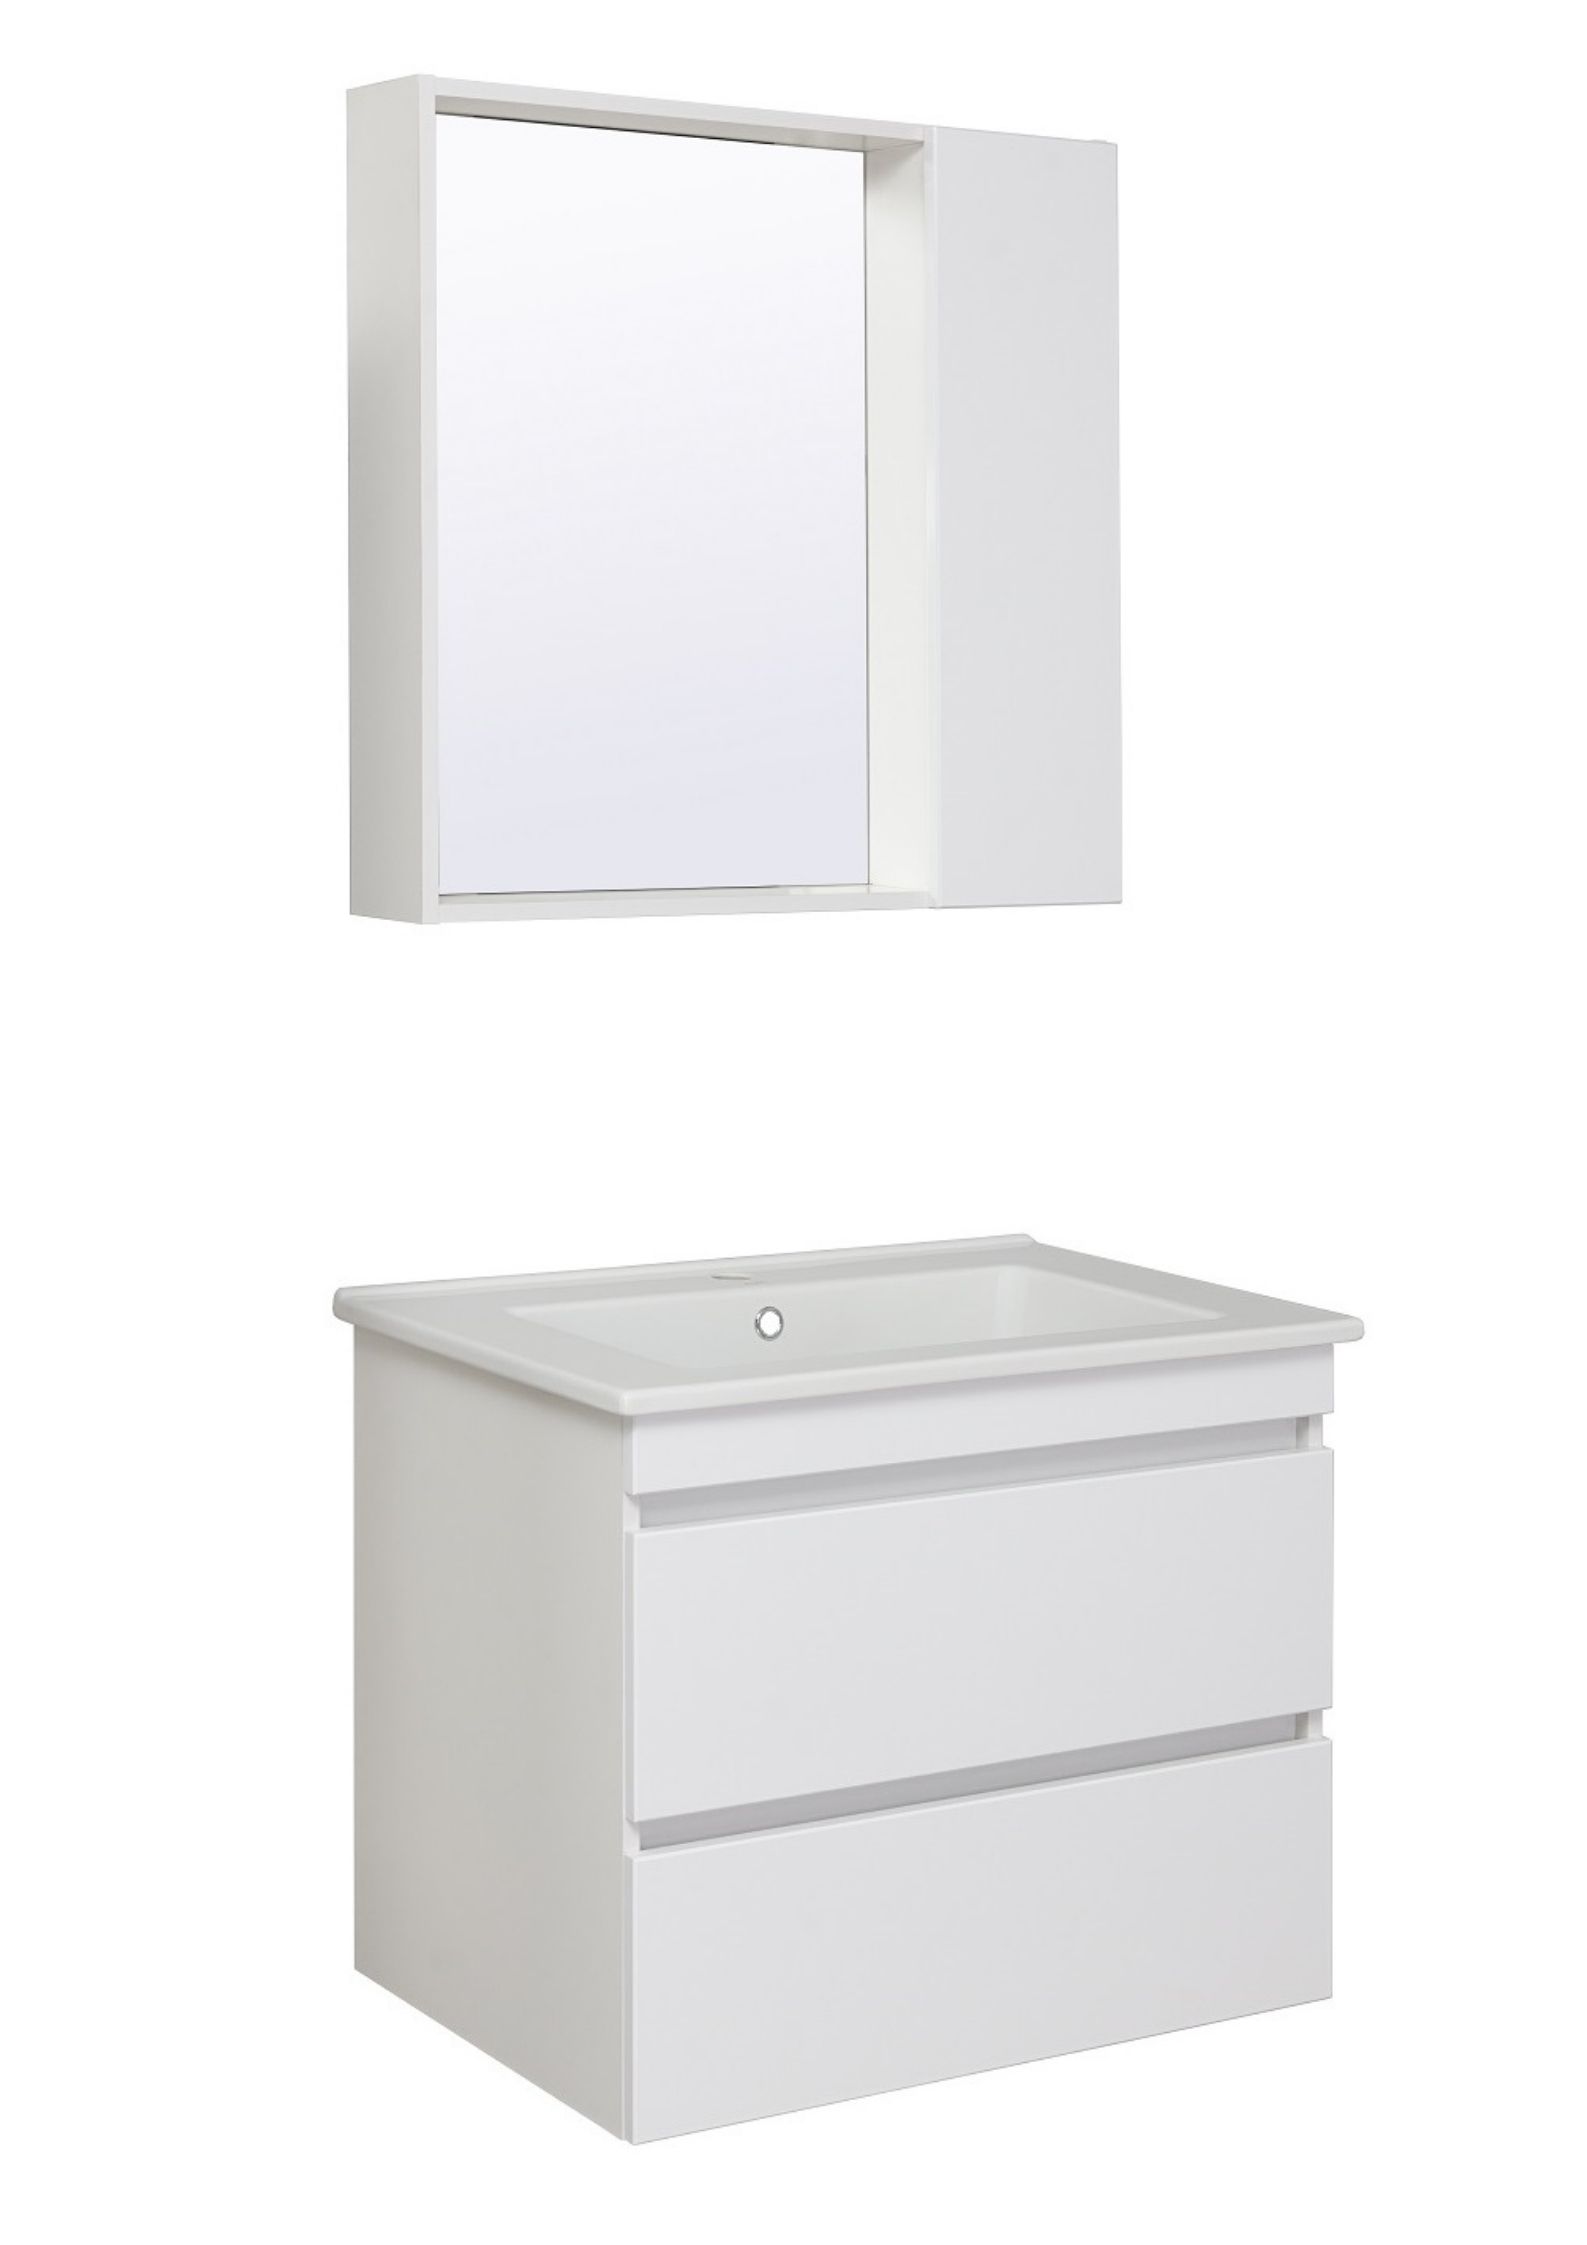 Мебель для ванной комнаты Runo Манхэттен 77 см подвесная, белая, цвет белый 00-00001047 - фото 2